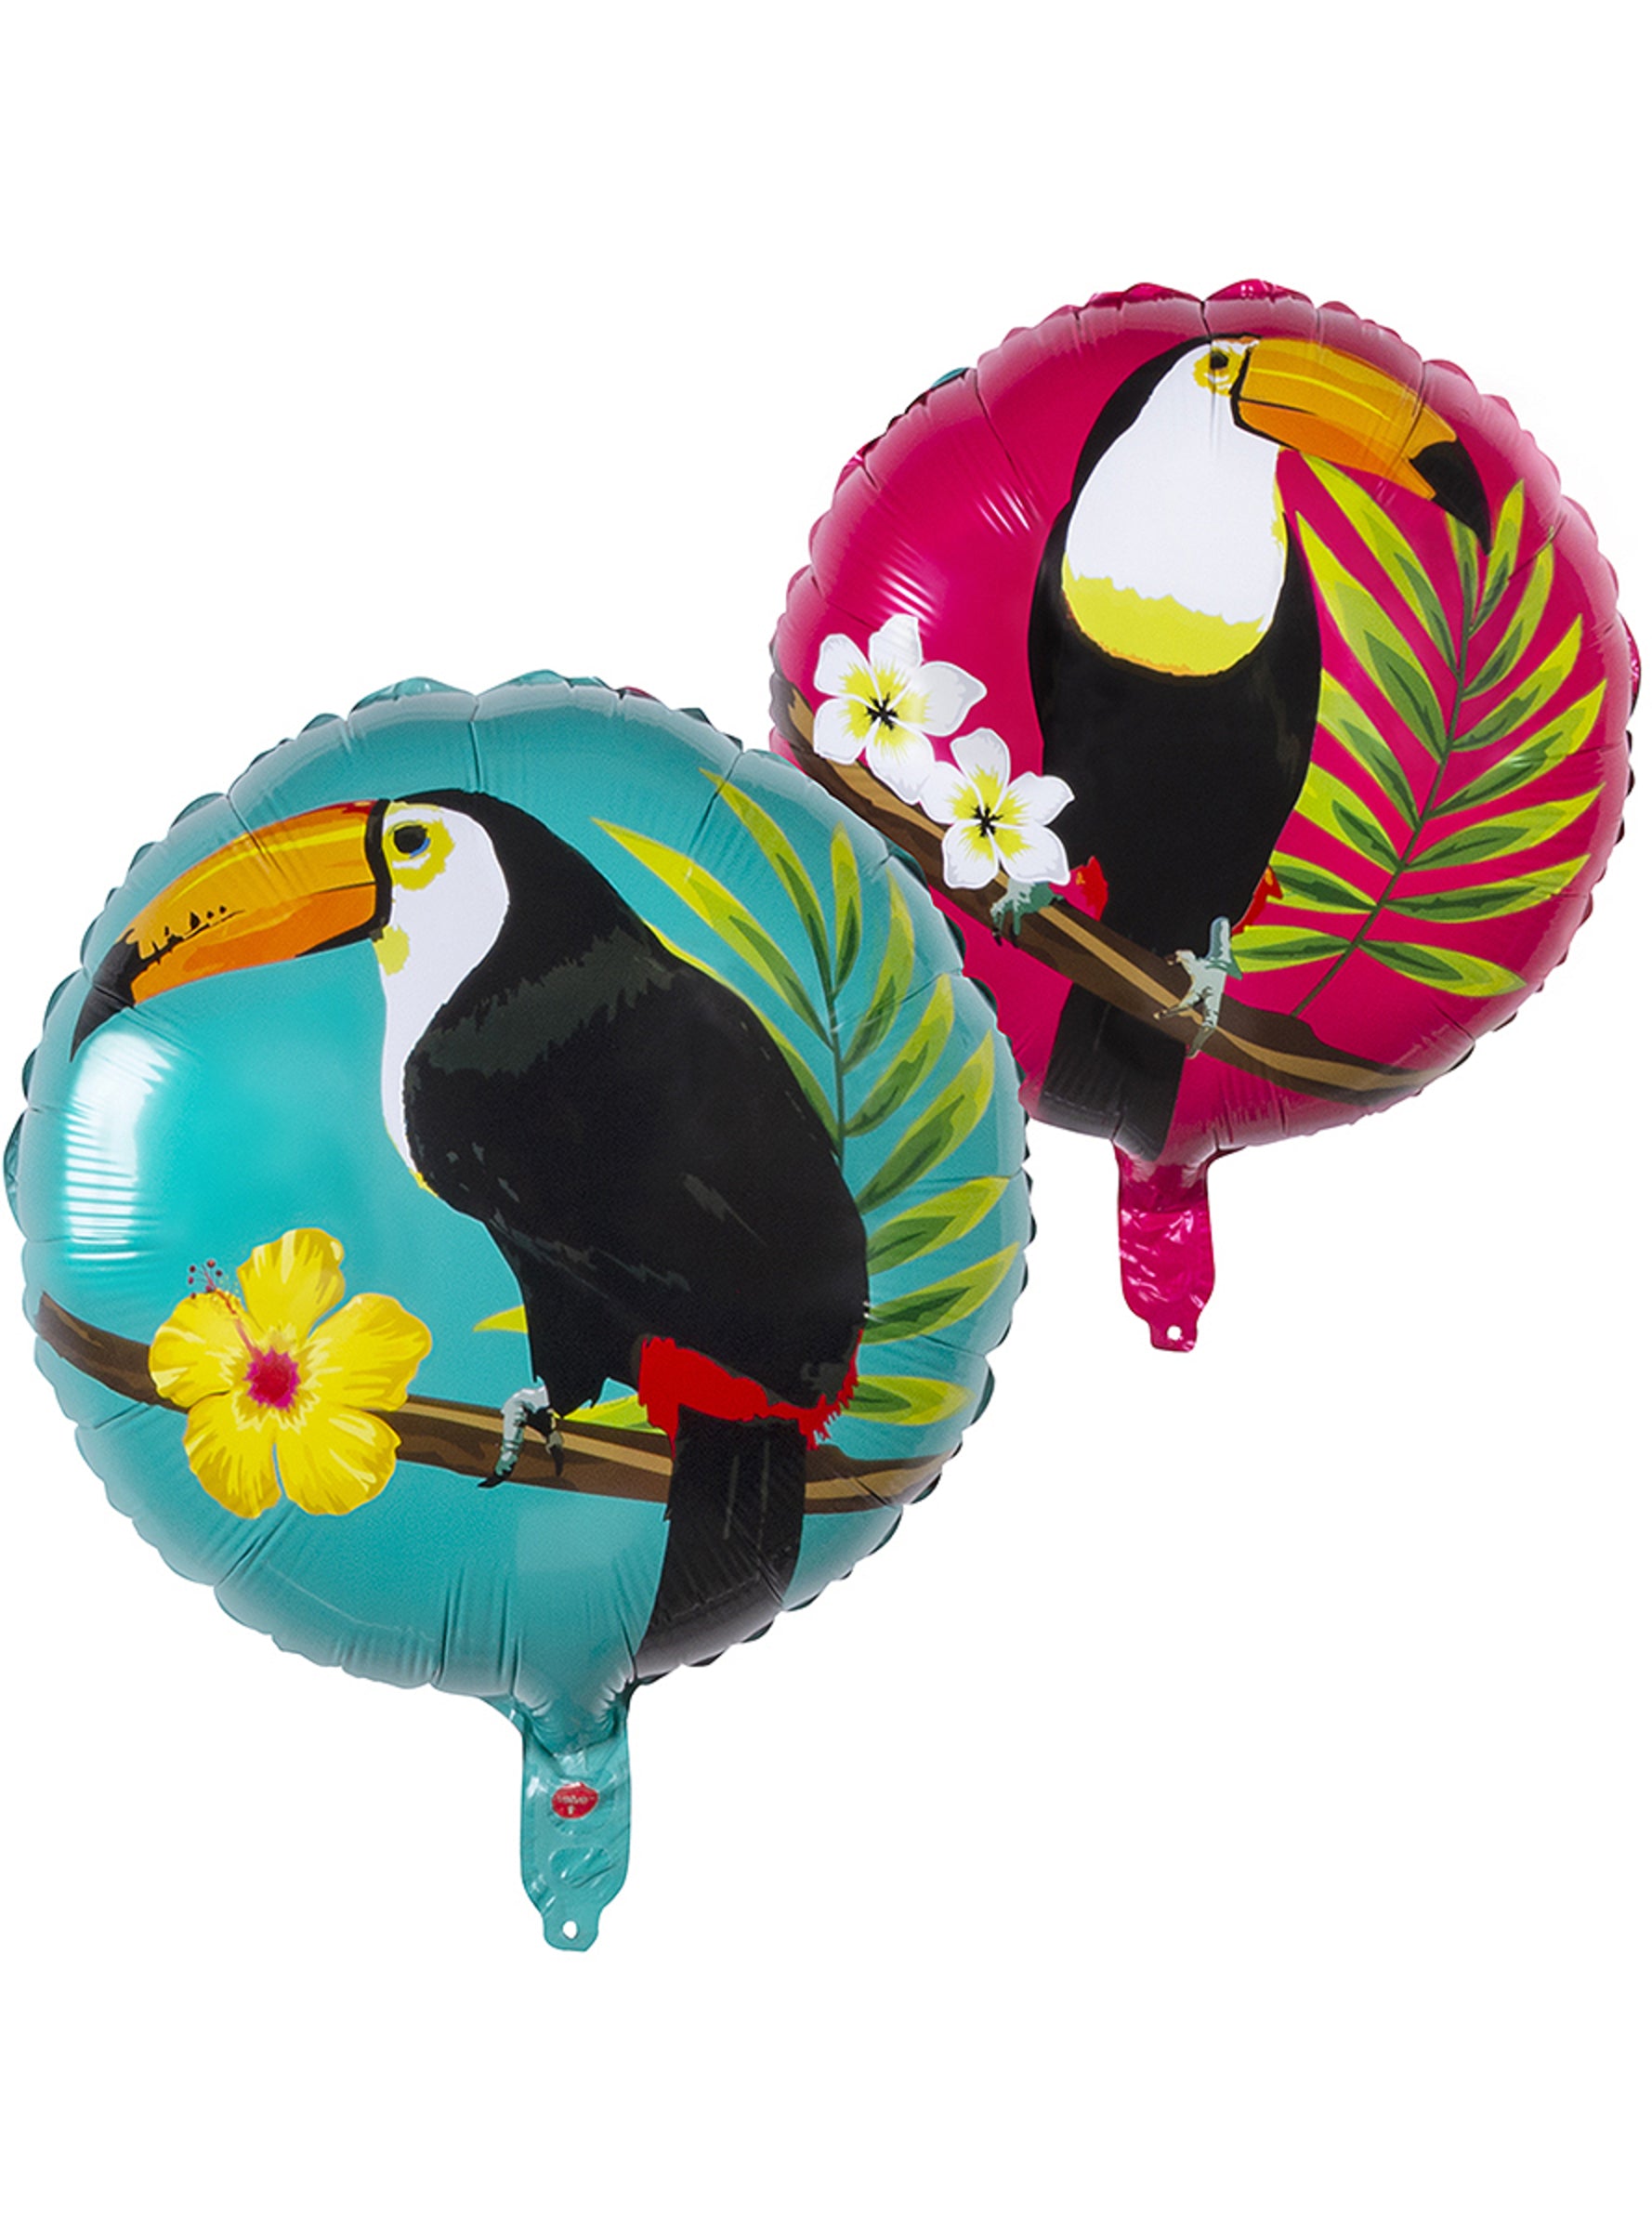 Ballon aluminium toucan deux couleurs (45 cm) - Toucan Party | ballon 45 cm | J2F Shop